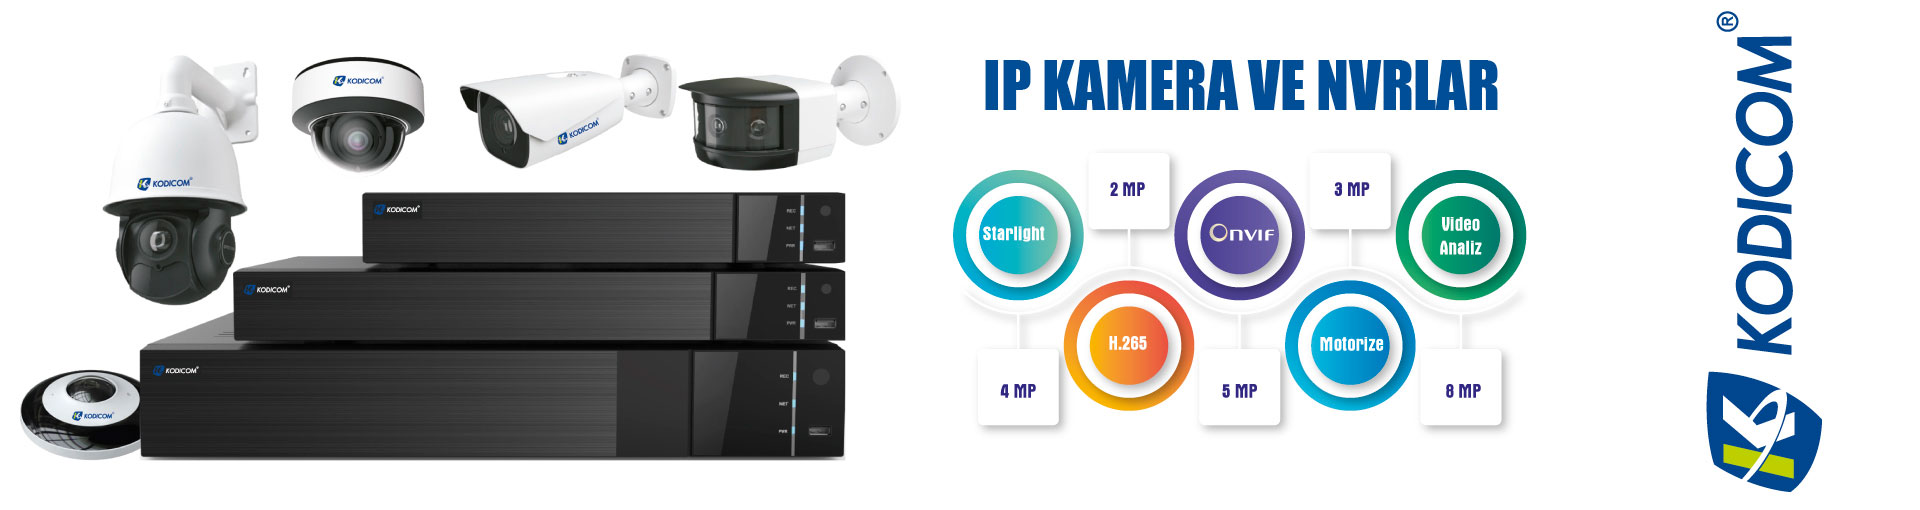 Uygun Fiyat Son Teknoloji IP Kamera Ve NVR Sistemleri